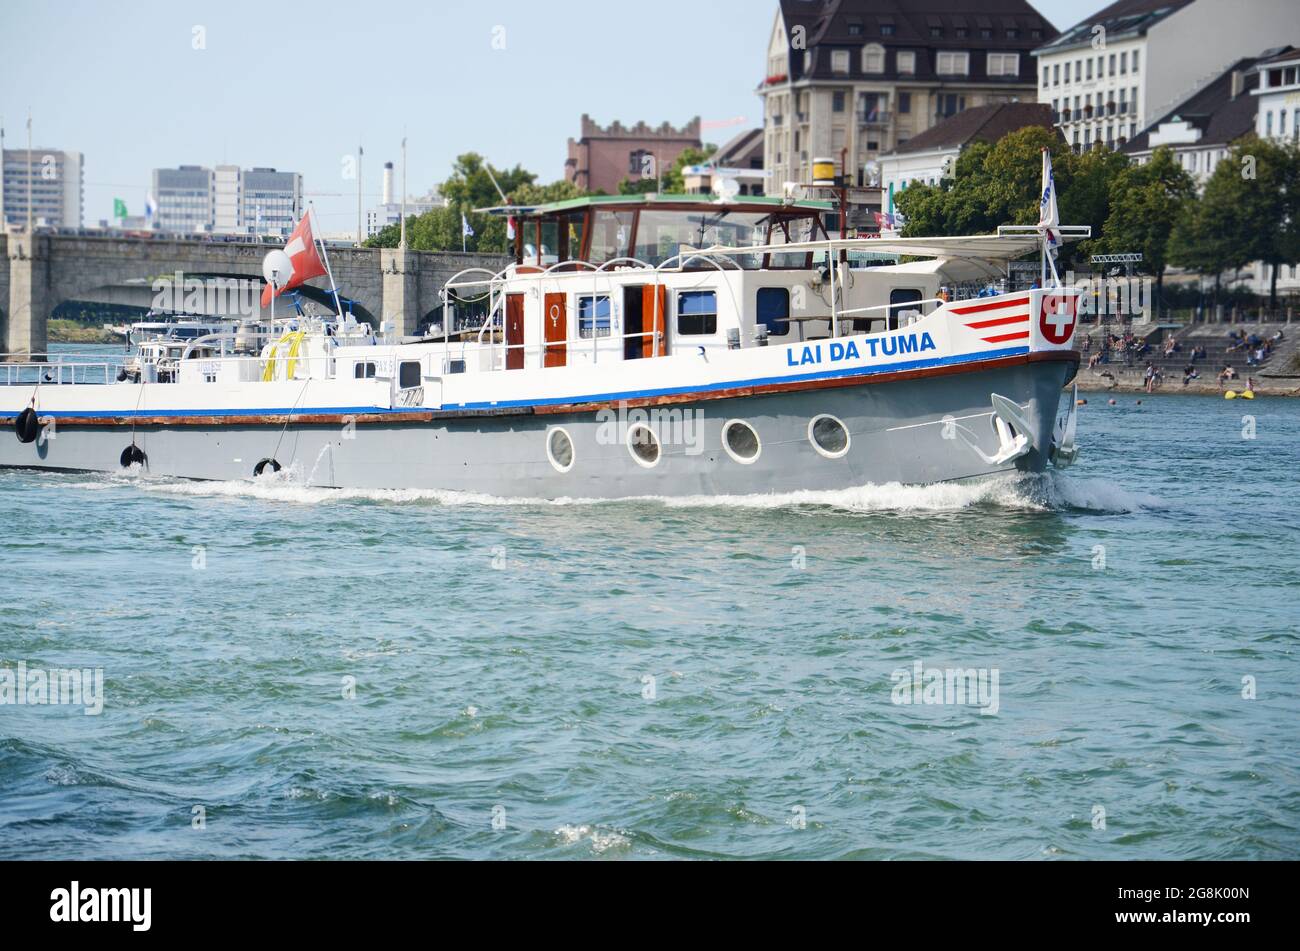 Lai EINE Tauma Bootstour auf dem Rhein in Basel Schweiz. Stockfoto